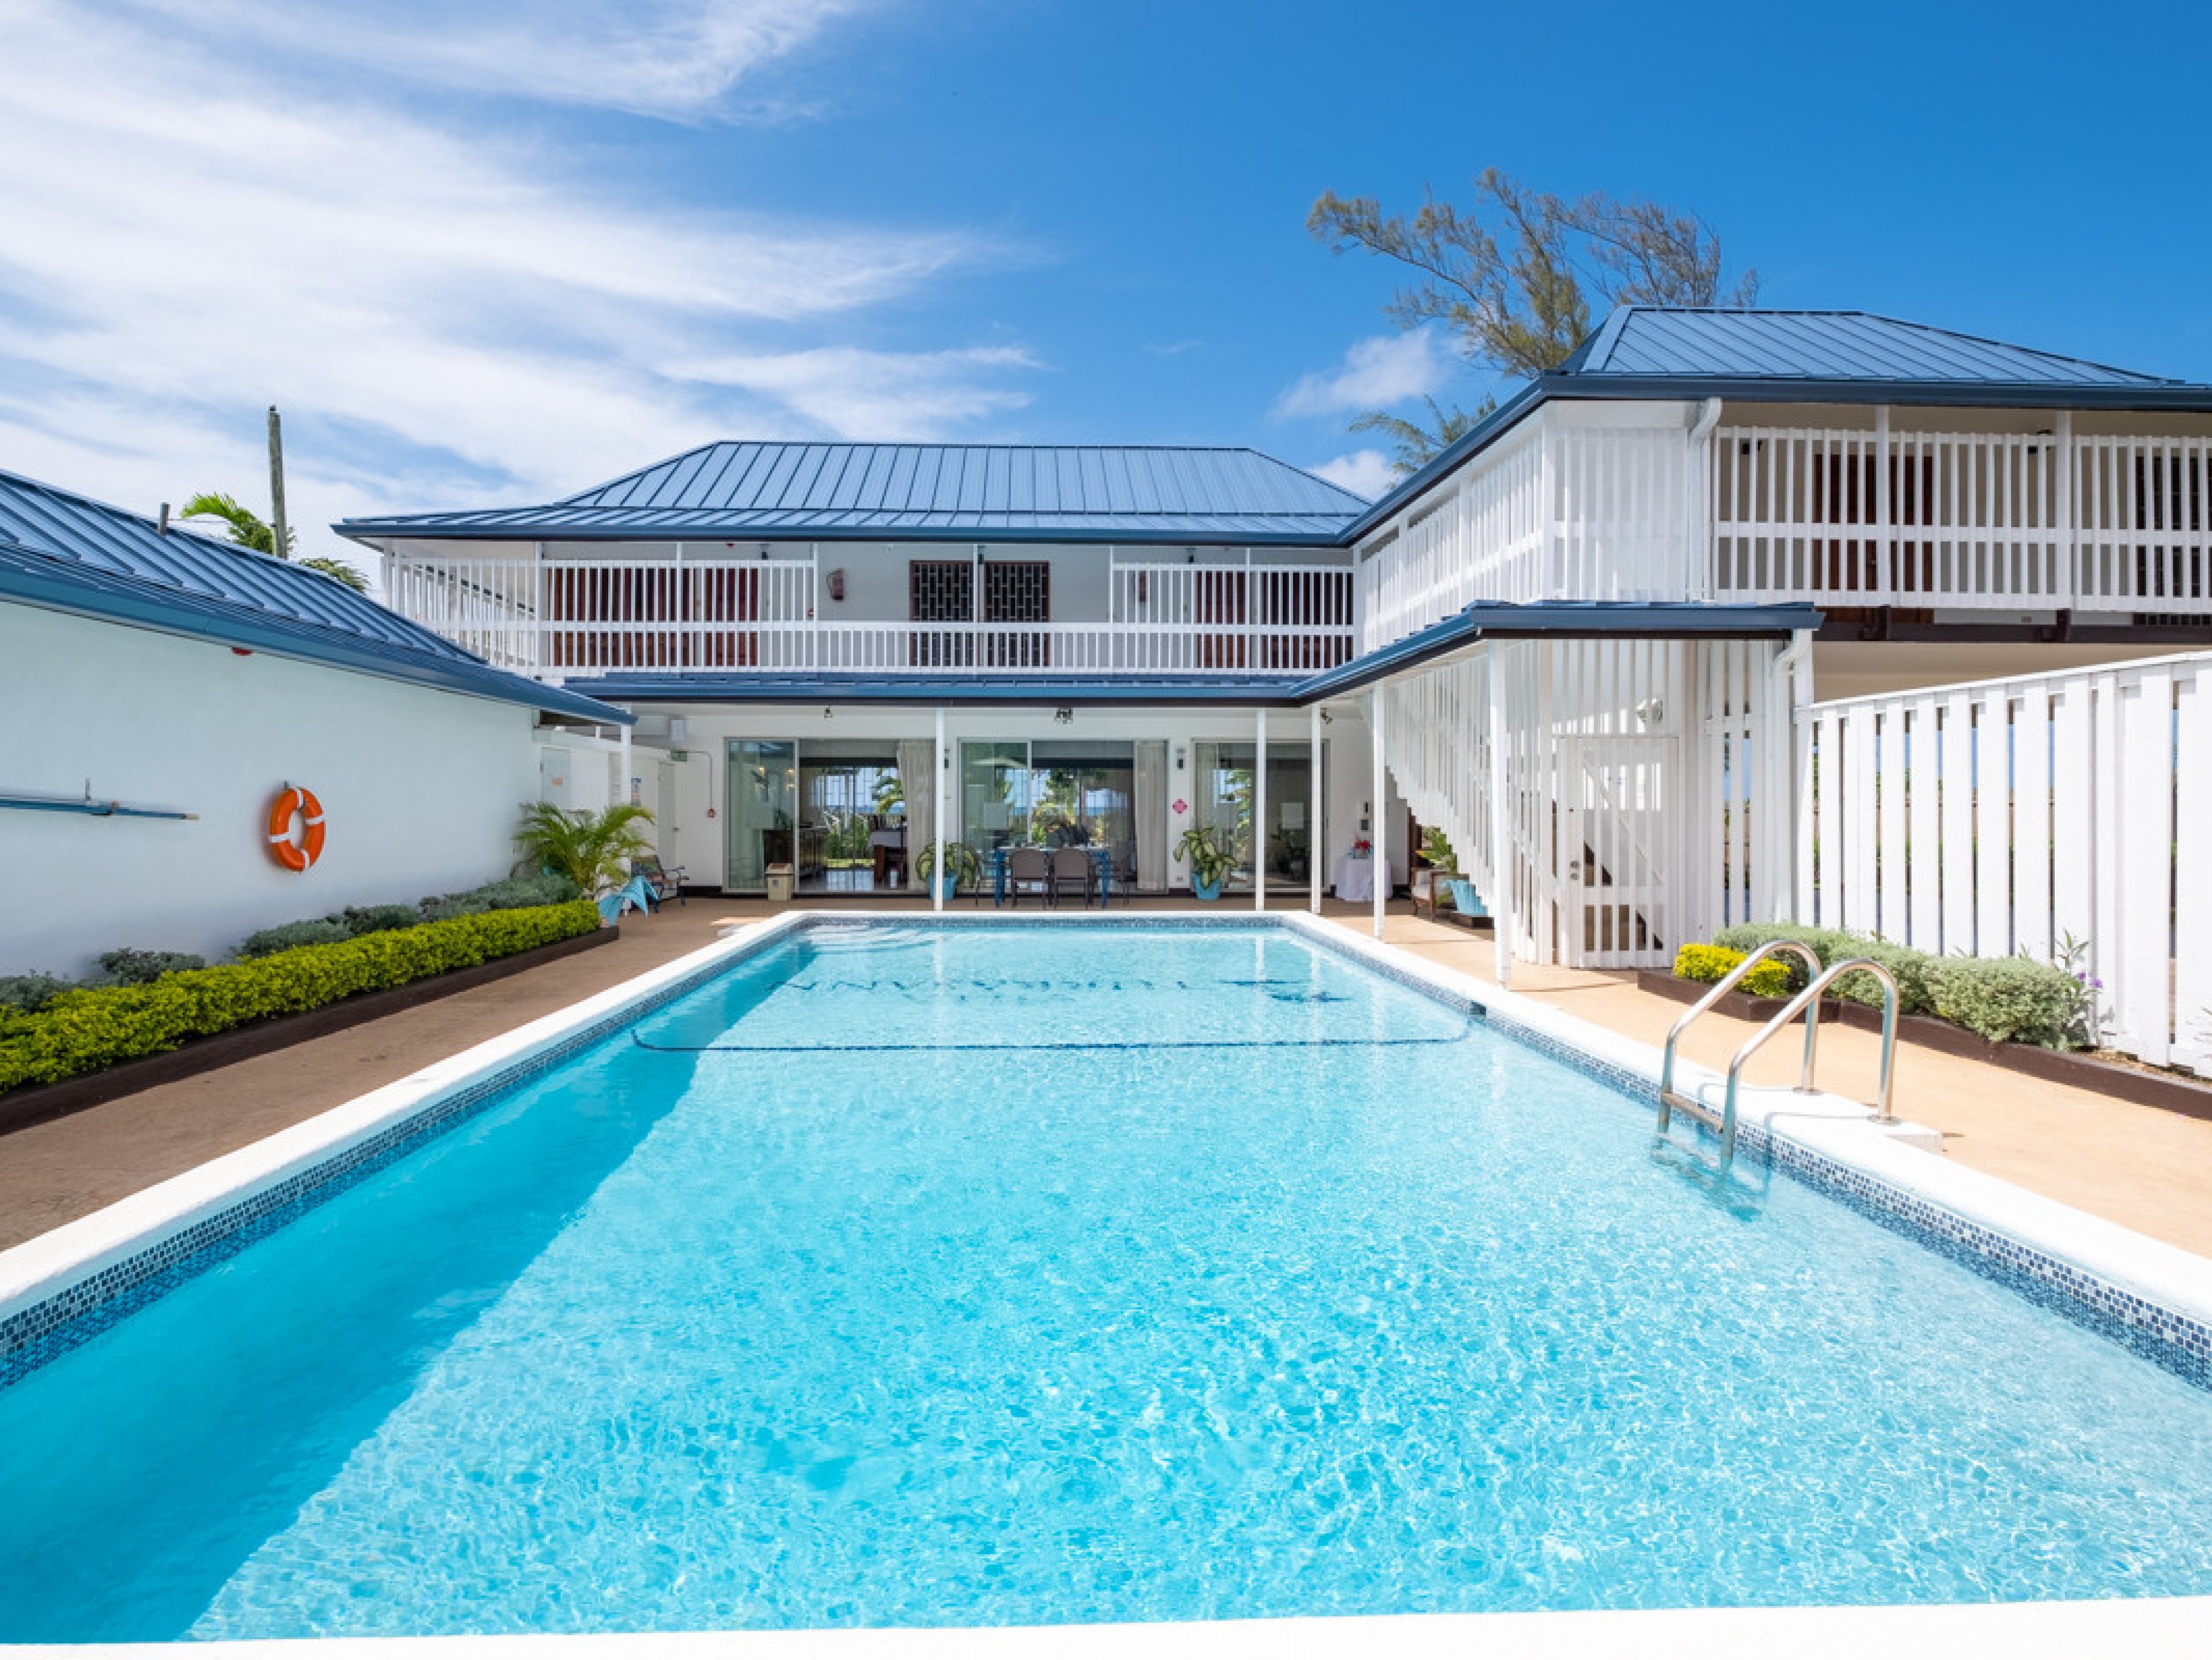 Villa Turrasann villas in Jamaica with private pools